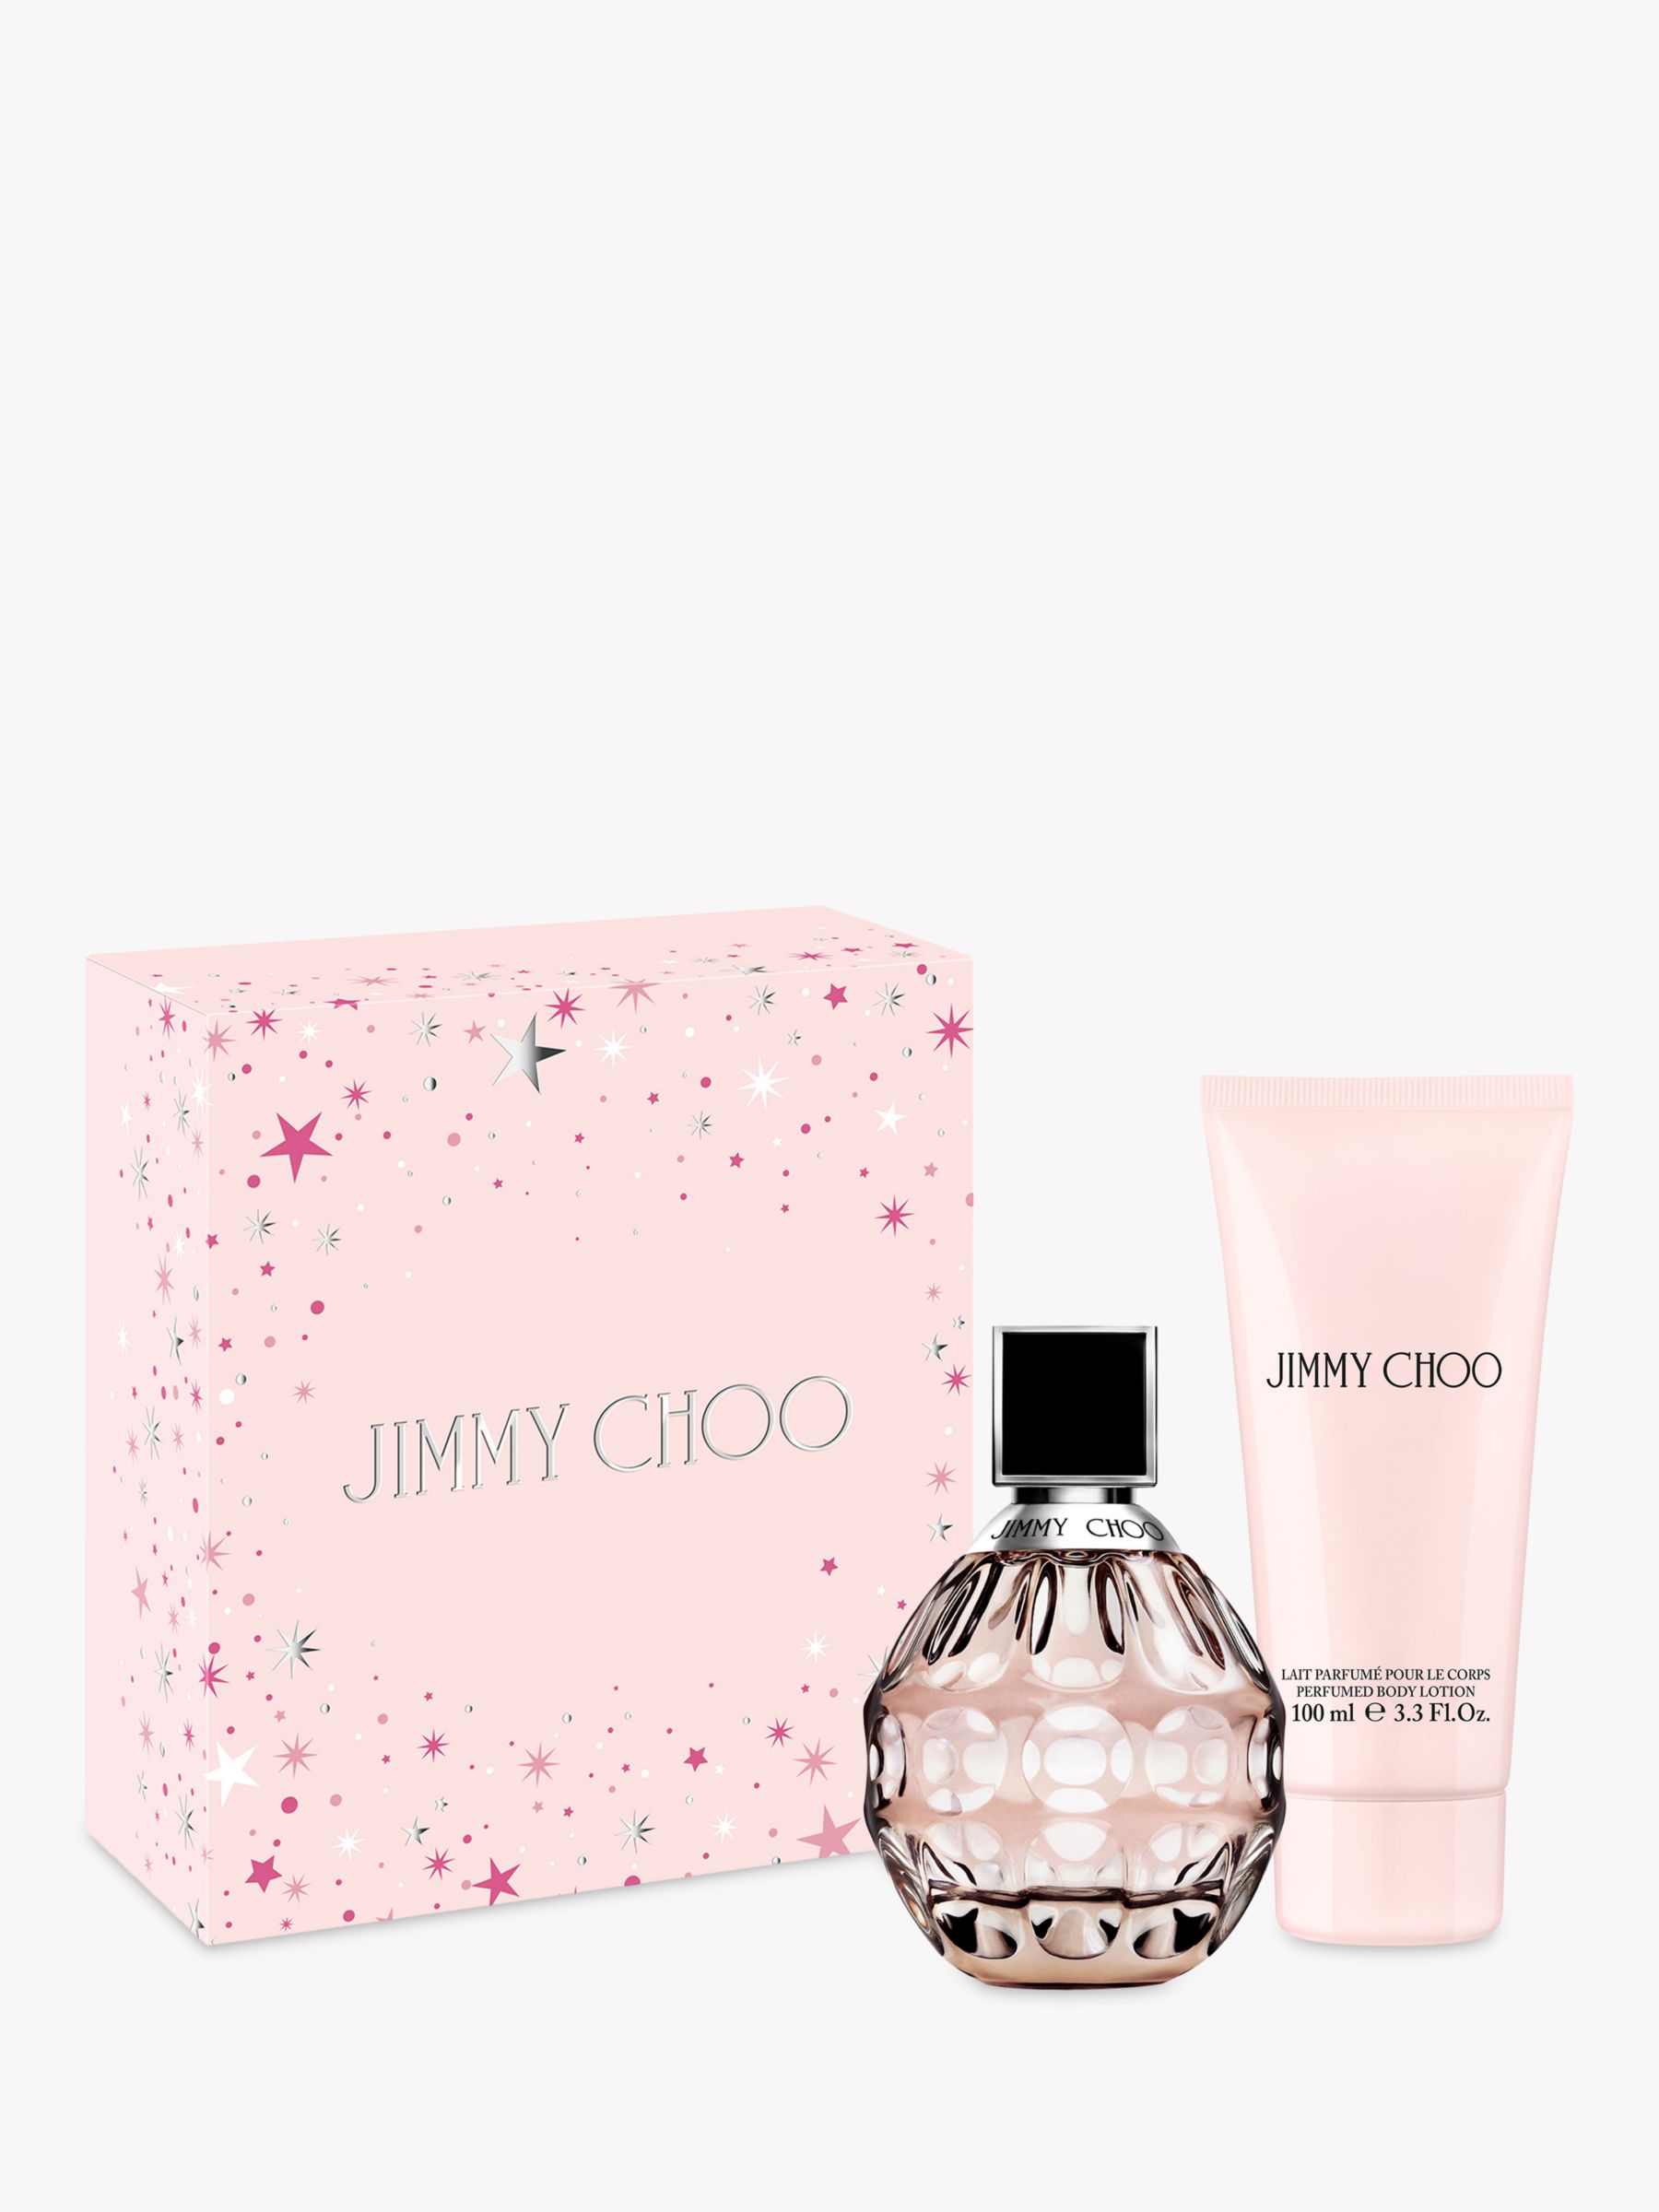 Jimmy Choo I Want Choo Eau de Perfume Spray 125ml Limited Edition 2023